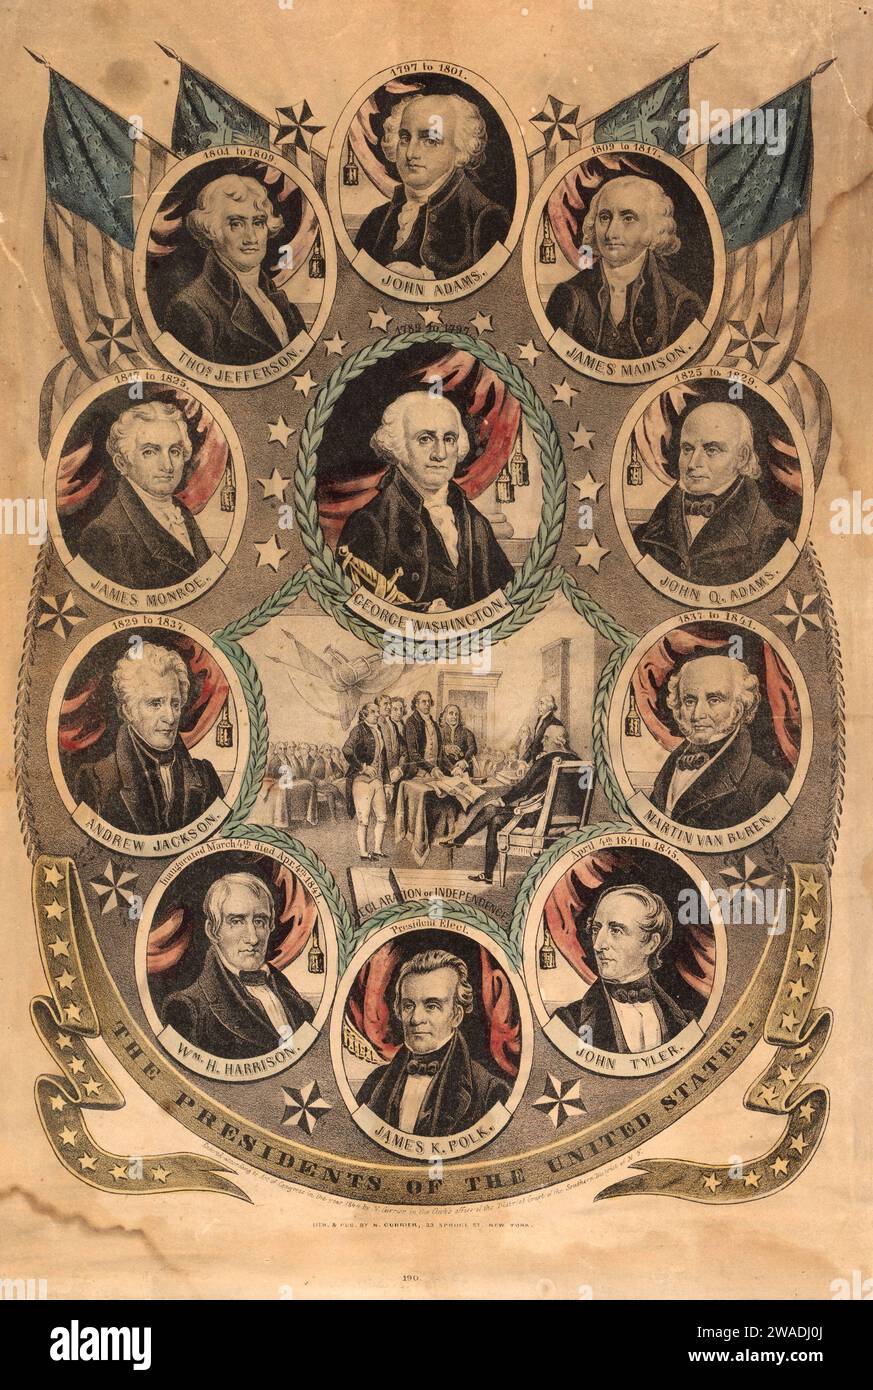 Das Litograph-Poster Presidents of the United States CA 1844 von Nathaniel Currier zeigt auch Porträts amerikanischer Präsidenten und die Unterzeichnung der Unabhängigkeitserklärung am 4. Juli 1775 Stockfoto